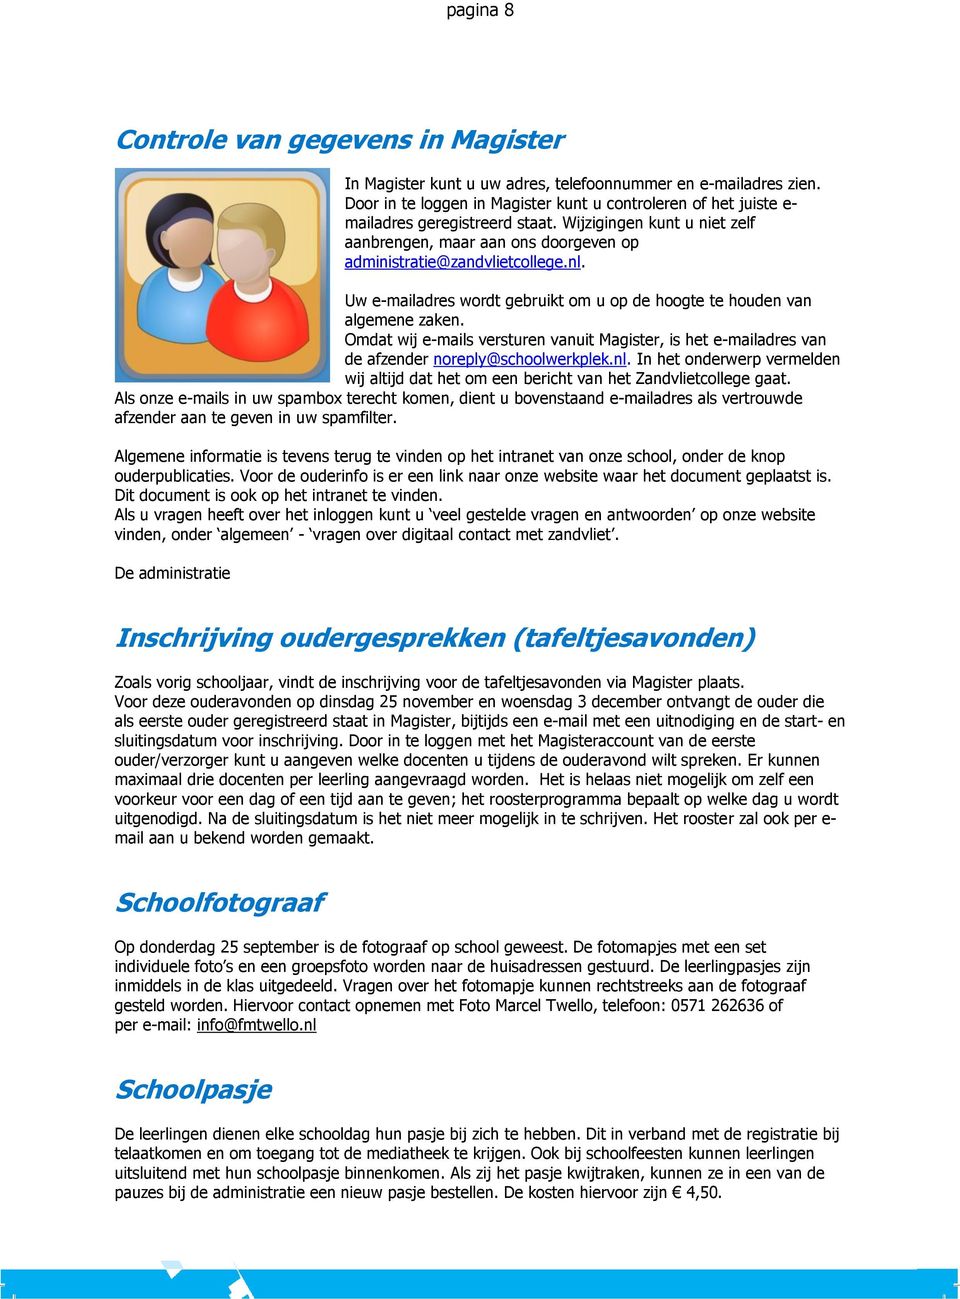 Uw e-mailadres wordt gebruikt om u op de hoogte te houden van algemene zaken. Omdat wij e-mails versturen vanuit Magister, is het e-mailadres van de afzender noreply@schoolwerkplek.nl.